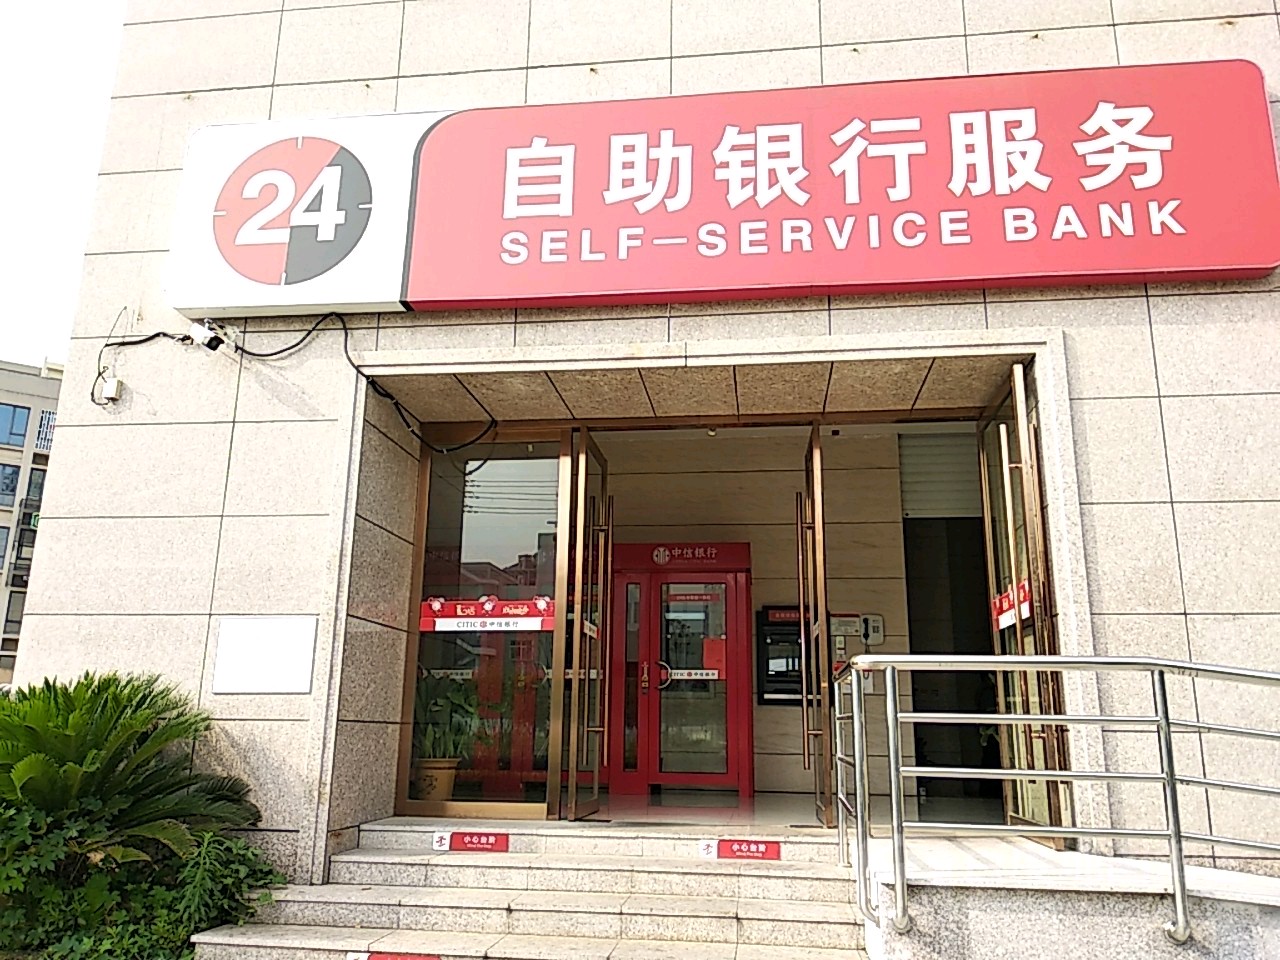 中信银行24小时自助银行服务(台州玉环支行)